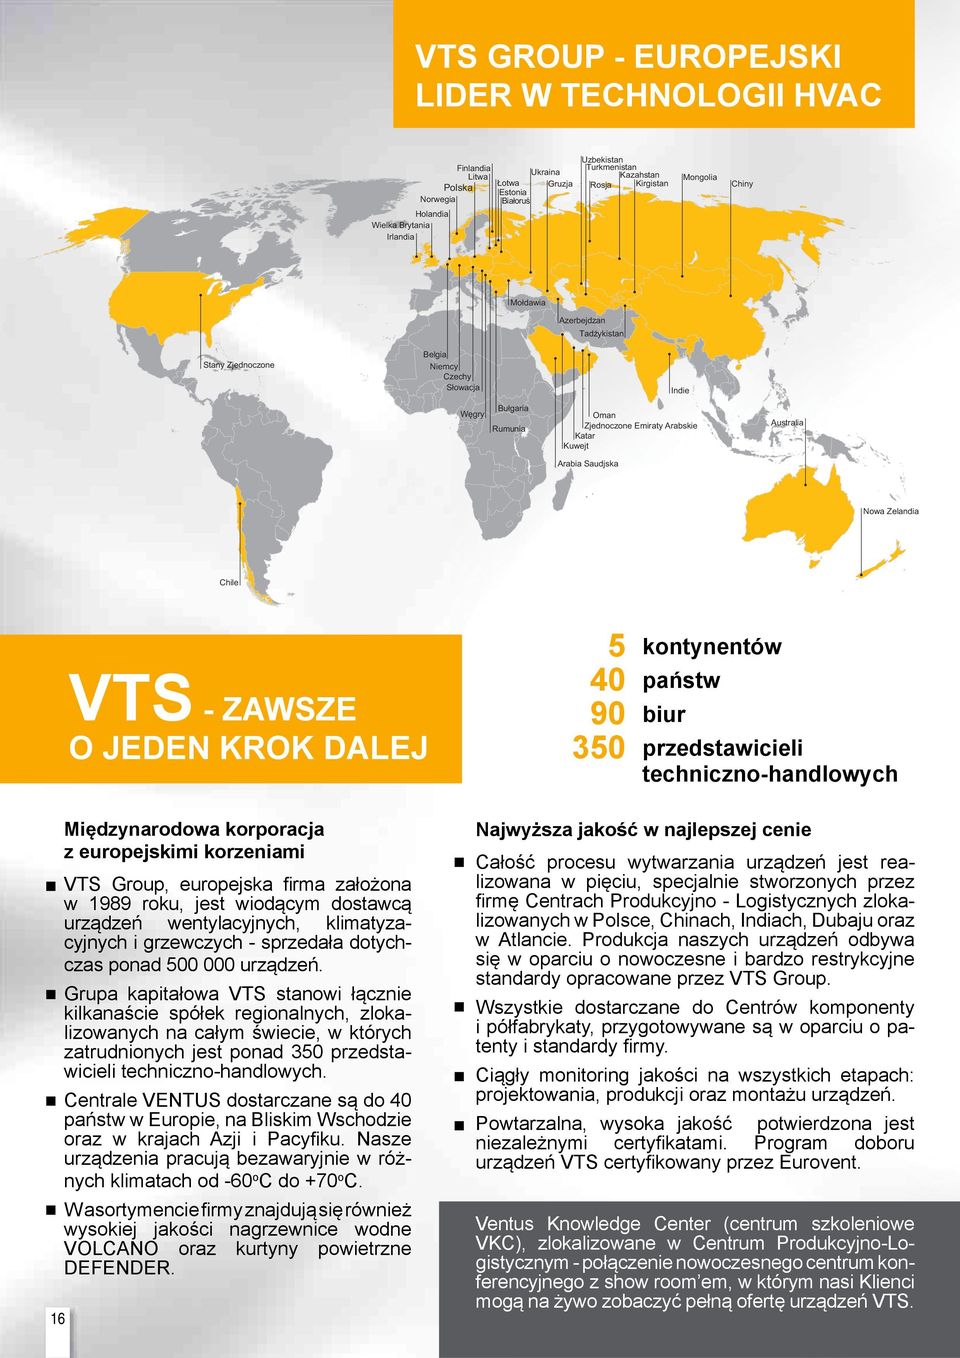 Saudjska Nowa Zelandia Chile VTS - ZAWSZE O JEDEN KROK DALEJ 5 40 90 350 kontynentów państw biur przedstawicieli techniczno-handlowych Międzynarodowa korporacja z europejskimi korzeniami VTS Group,